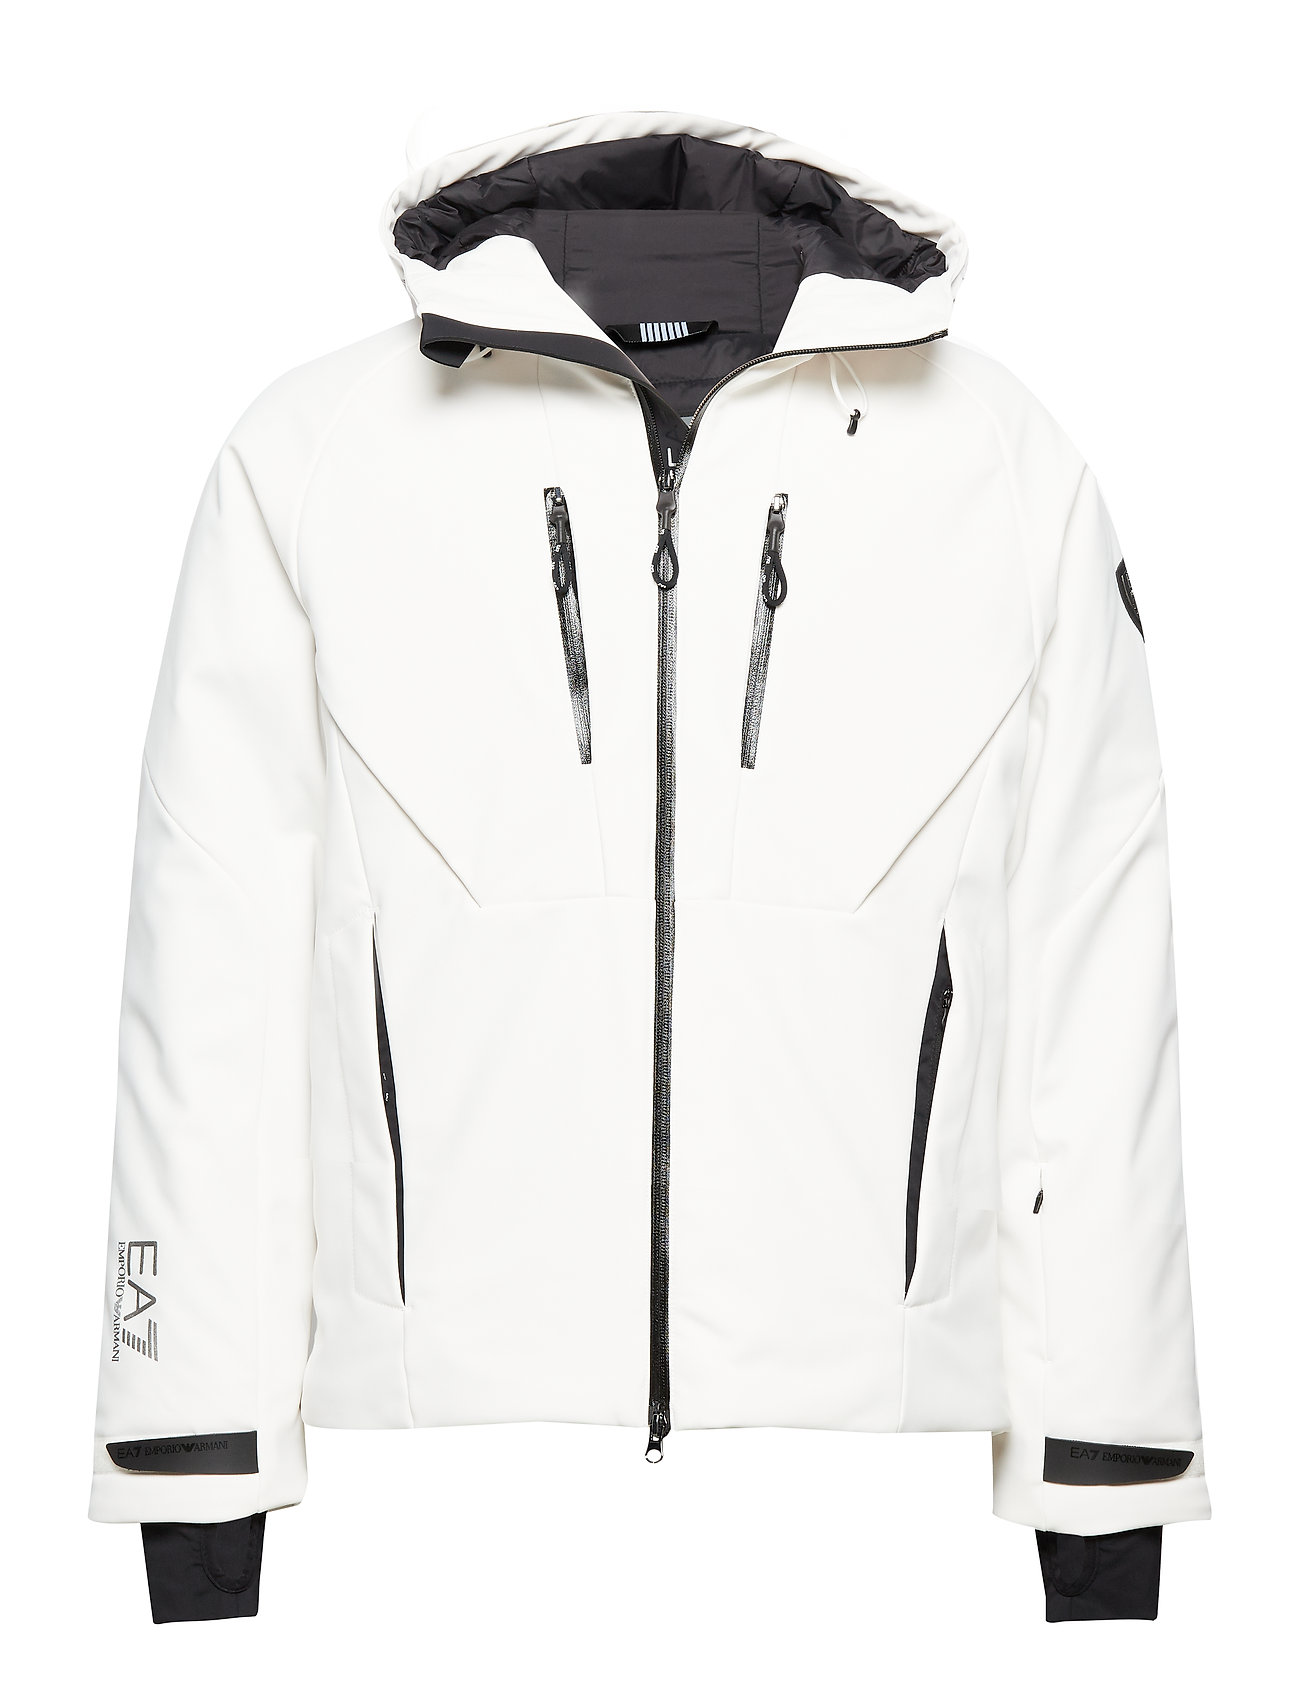 ea7 ski jacket